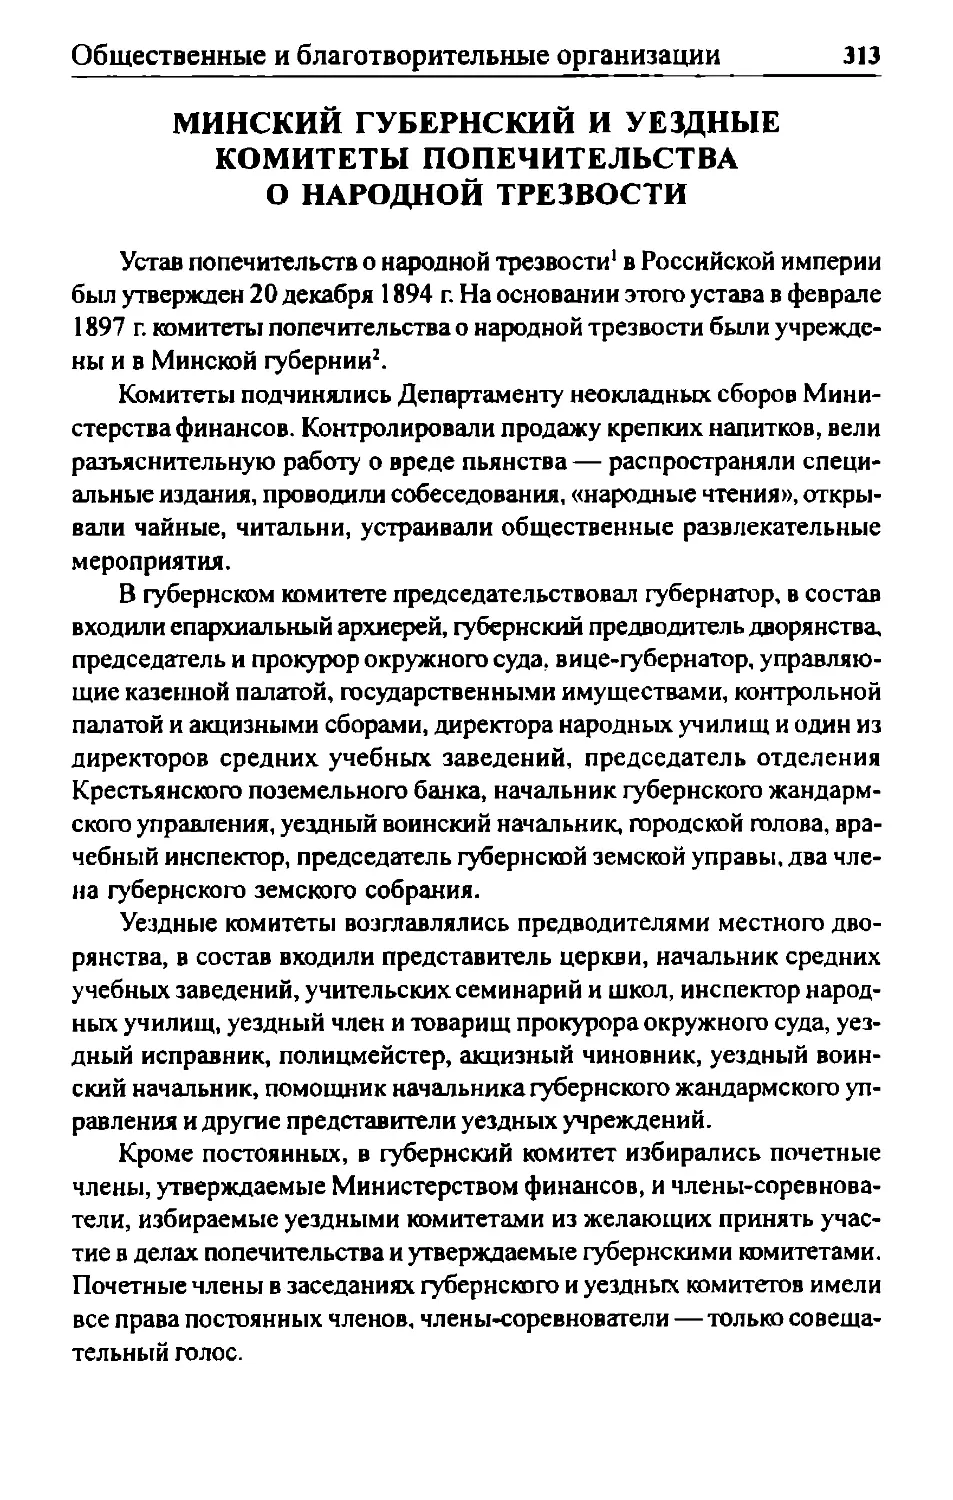 Минский губернский и уездные комитеты попечительства о народной трезвости